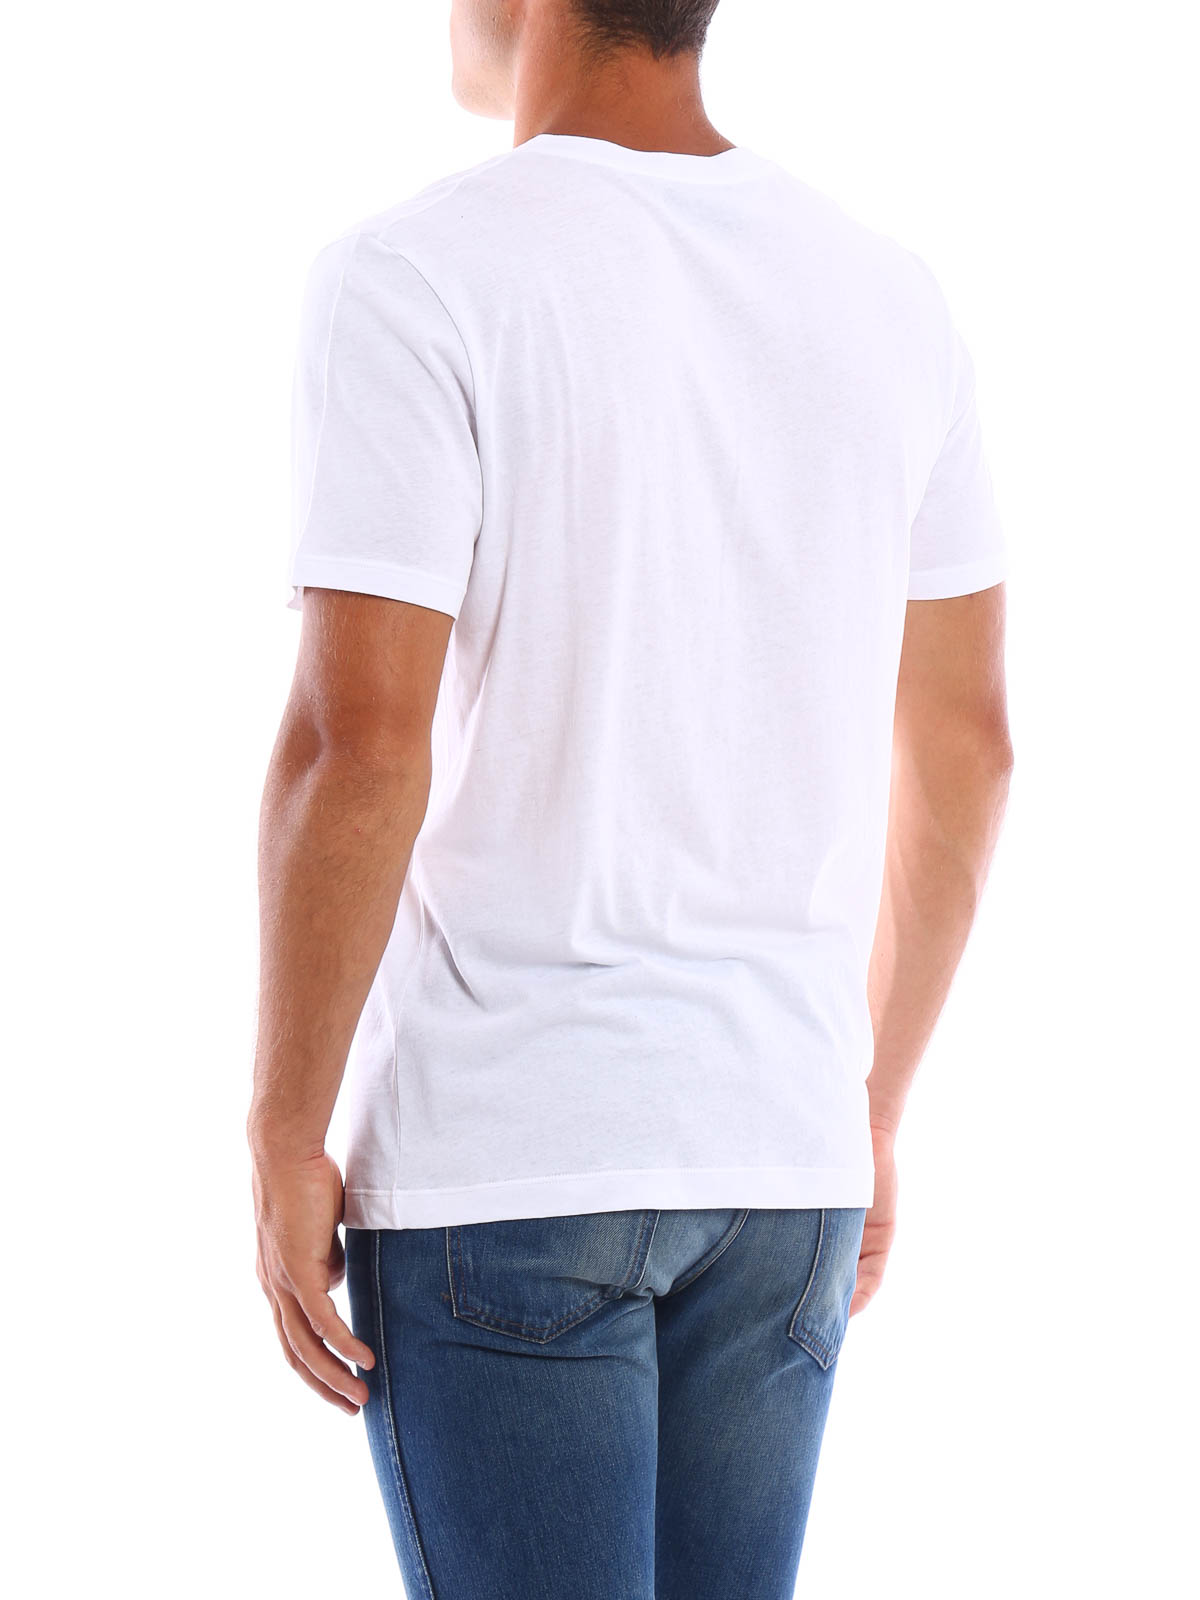 Limitado Regresa alcohol Camisetas Gucci - Camiseta Blanca Para Hombre - 430813X5C529083